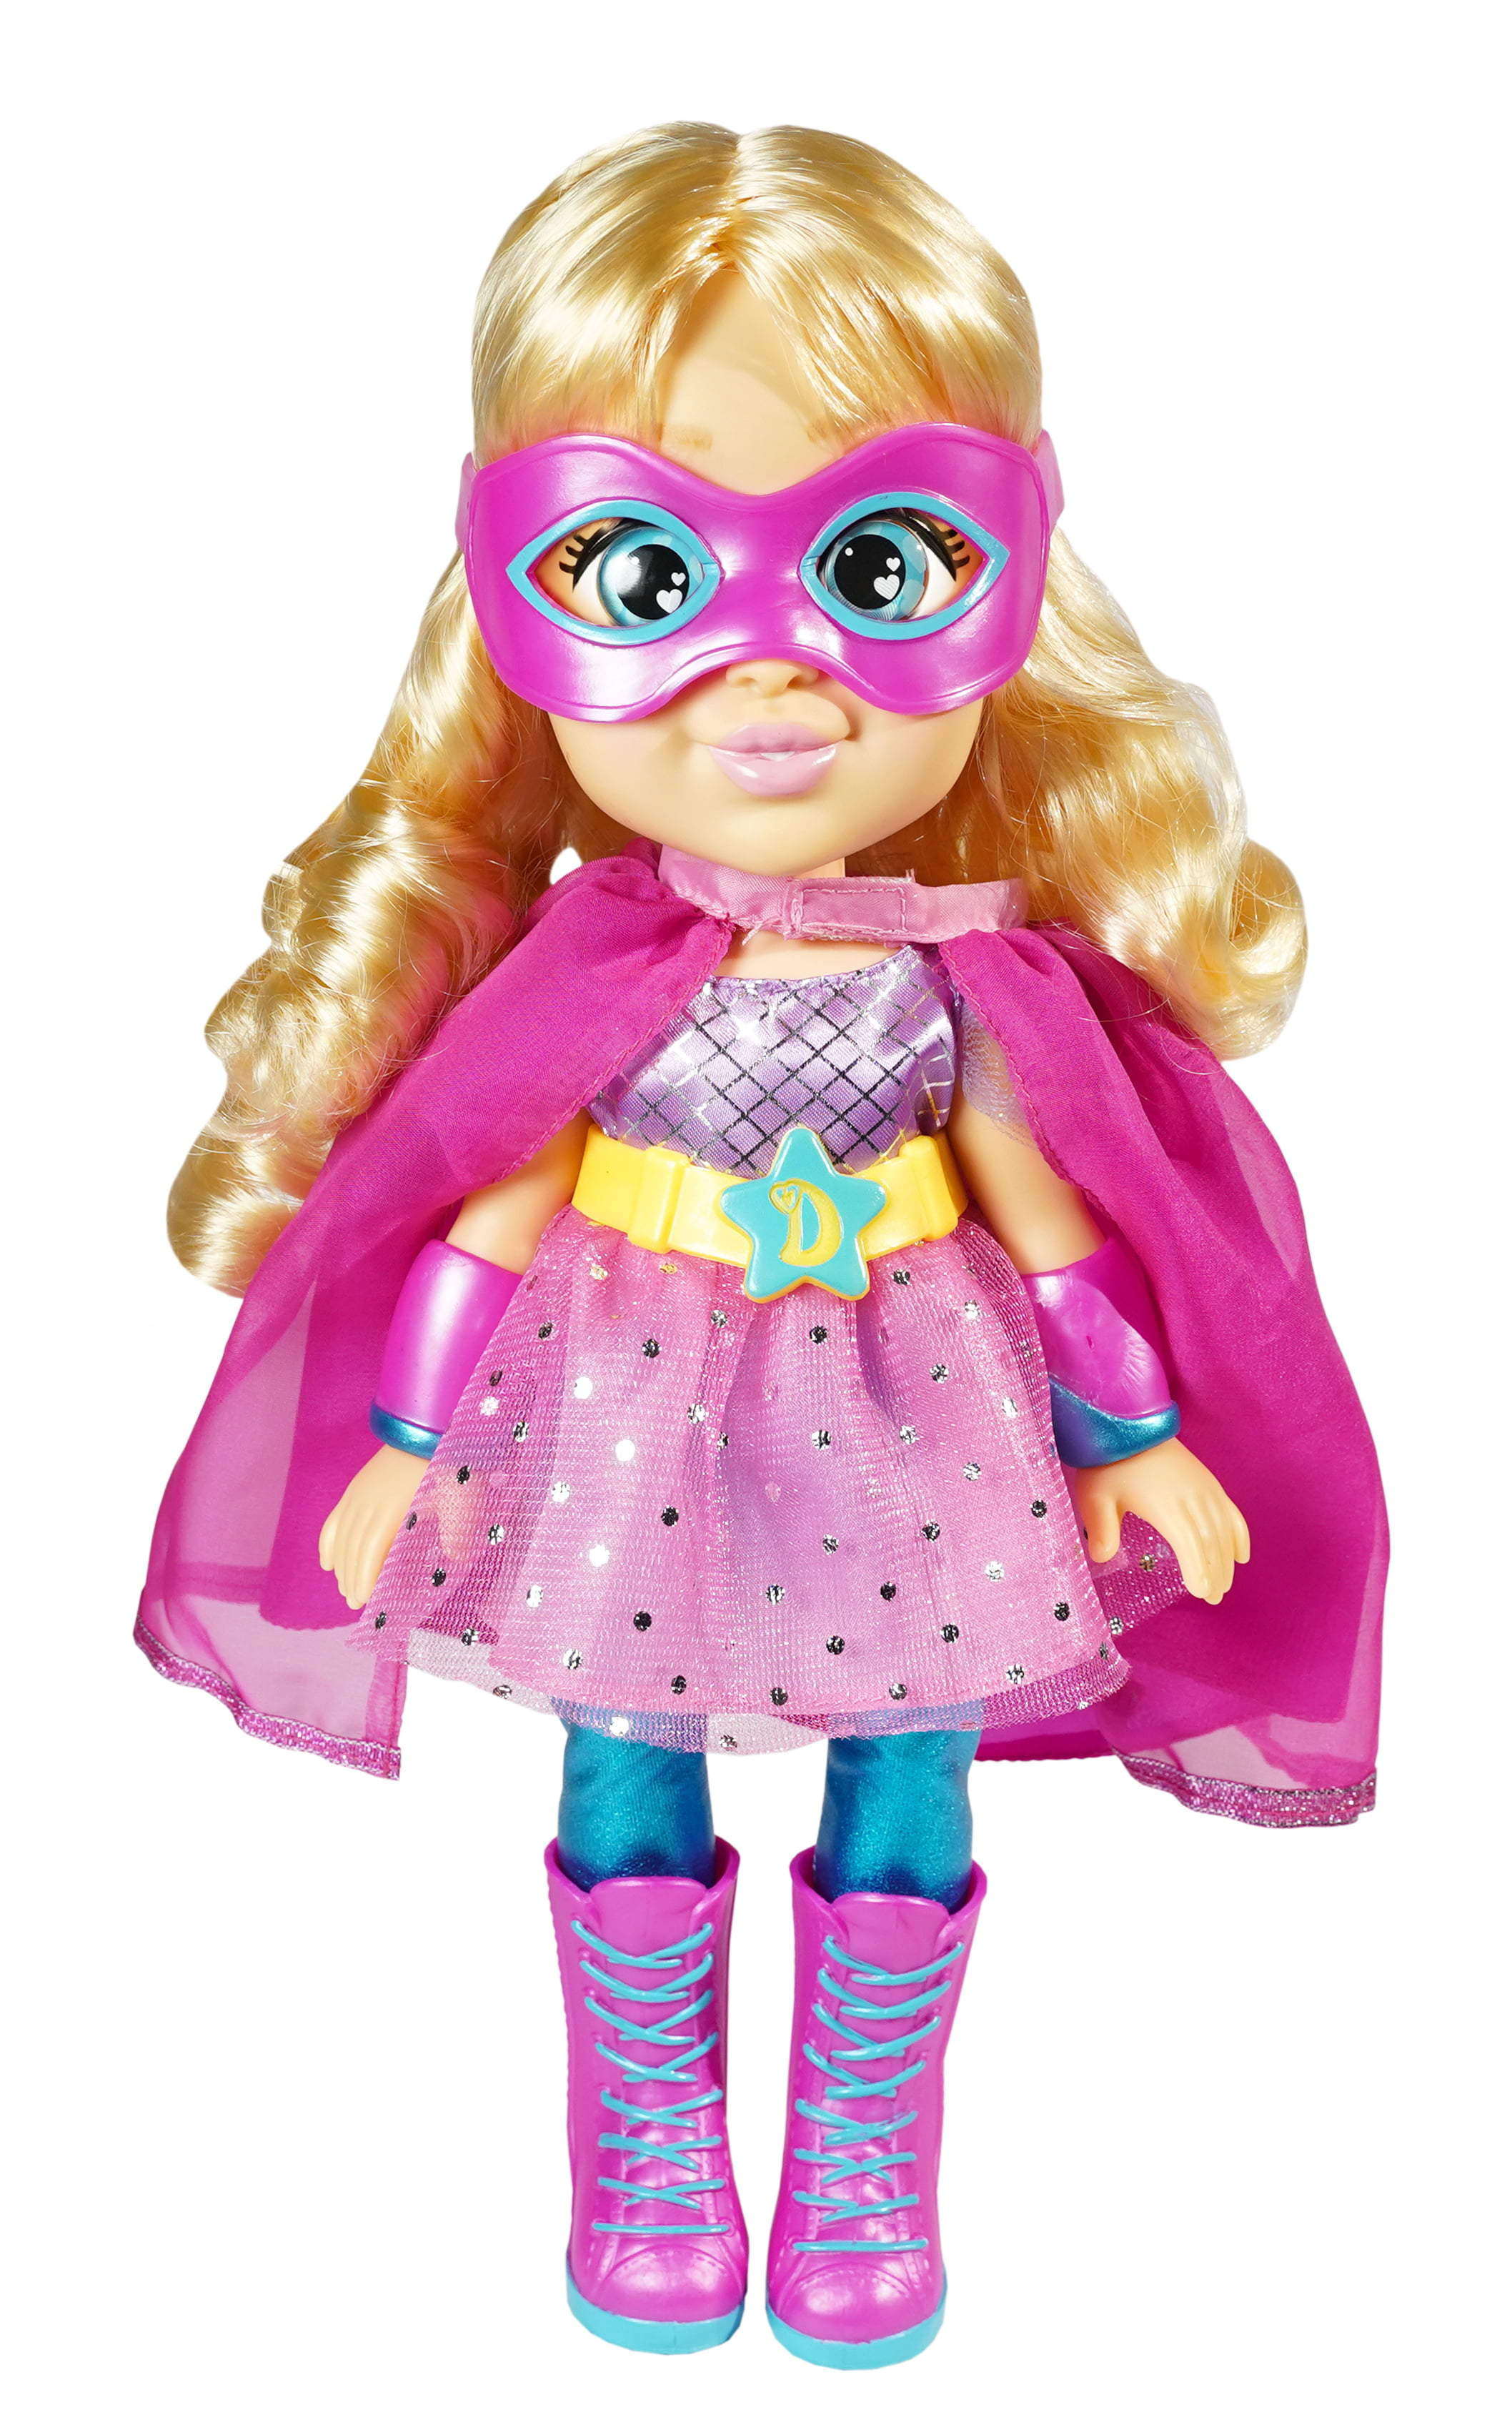 Love Diana Superhero Diana Doll NEW 2020 